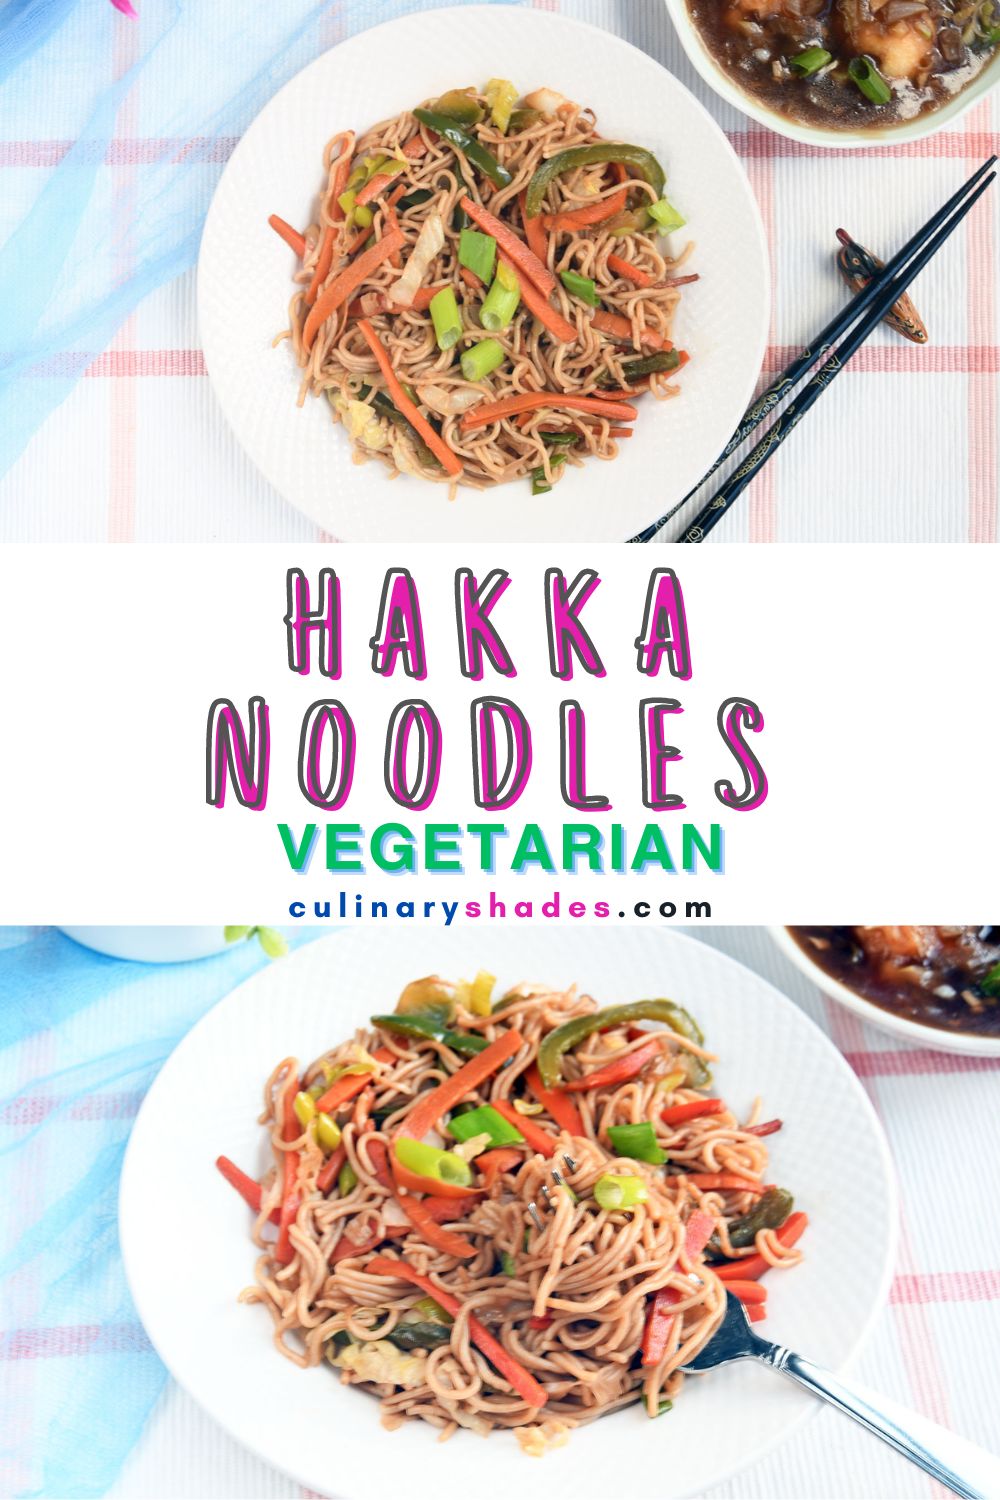 Hakka noodles served.